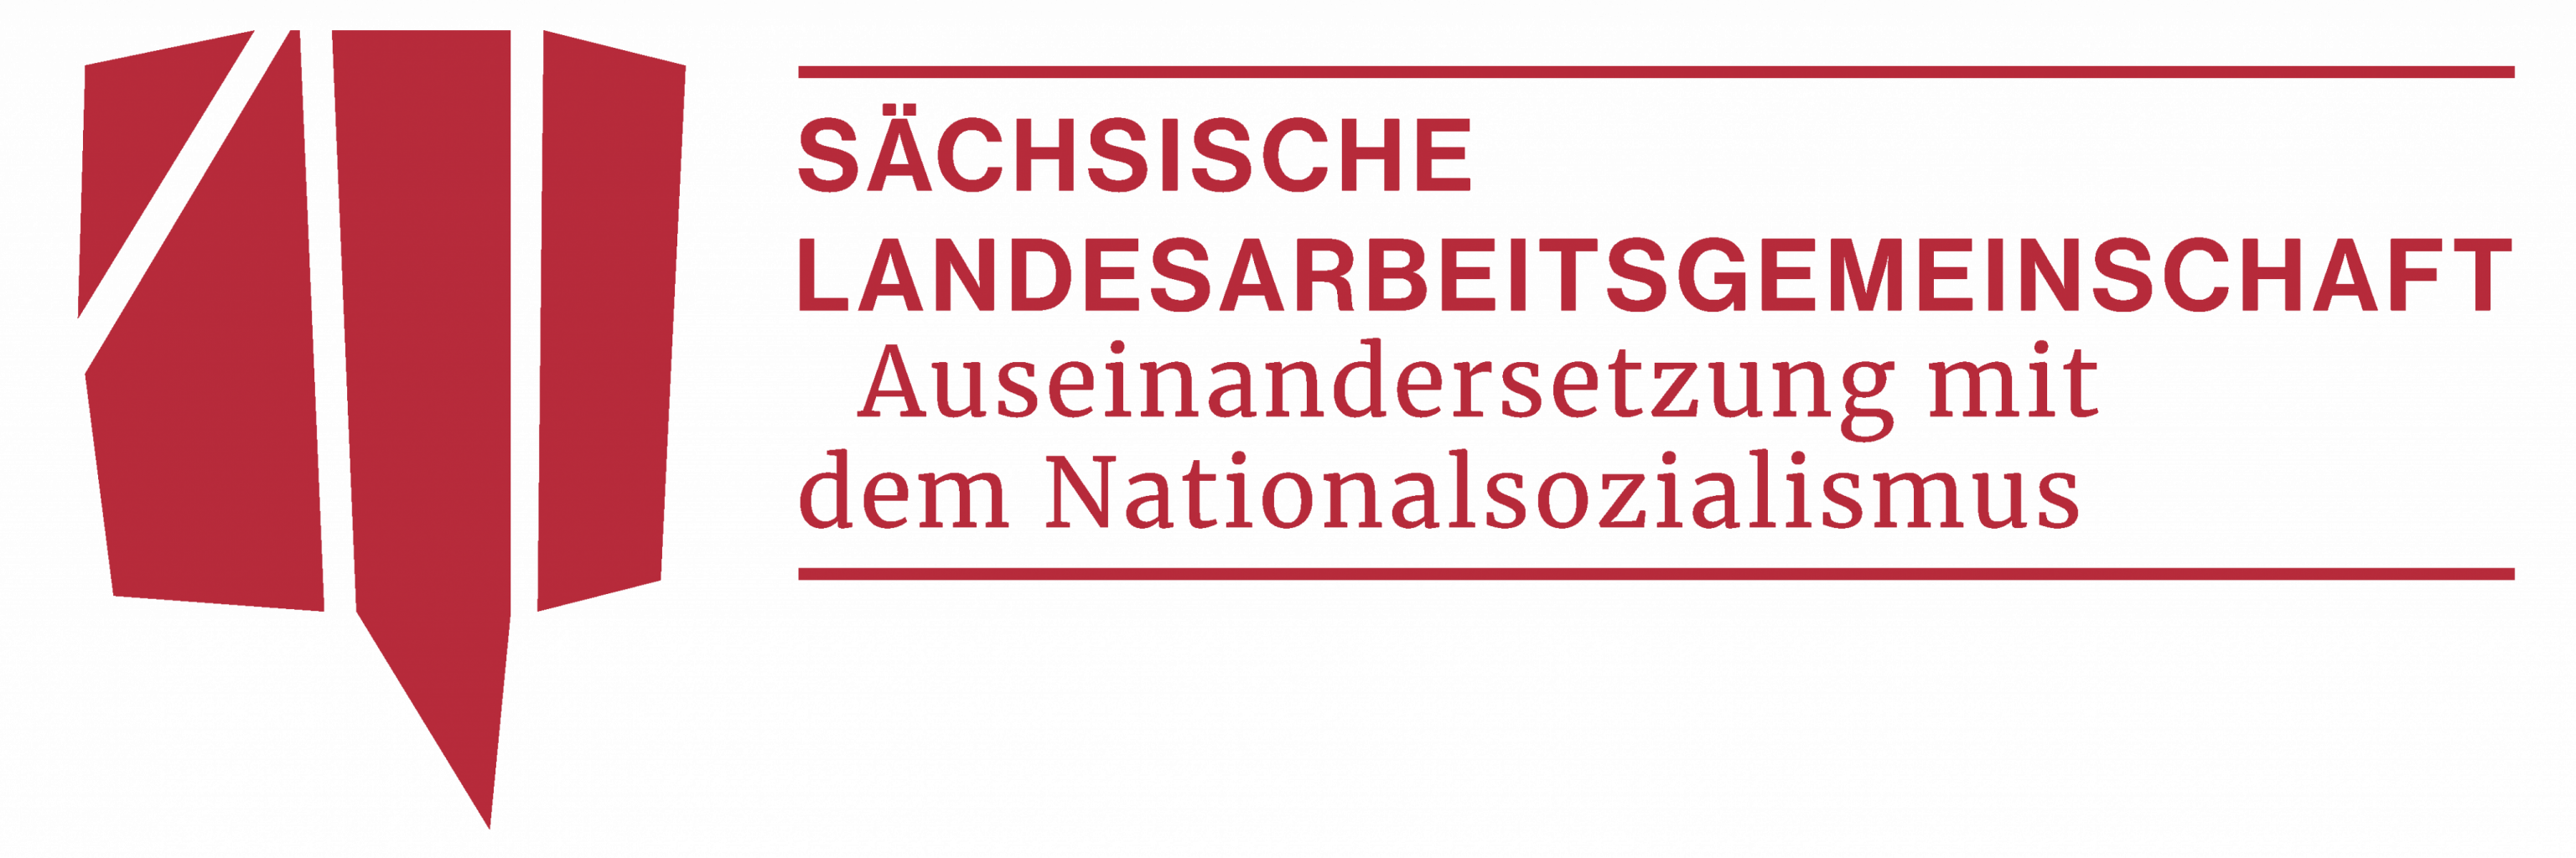 Sächsische Landesarbeitsgemeinschaft Auseinandersetzung mit dem Nationalsozialismus (sLAG)